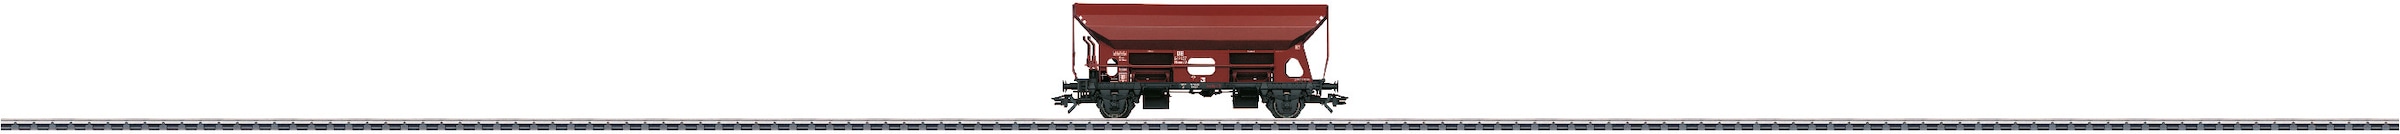 Märklin Güterwagen »Selbstentladewagen Otmm 70 - 46319«, Made in Europe